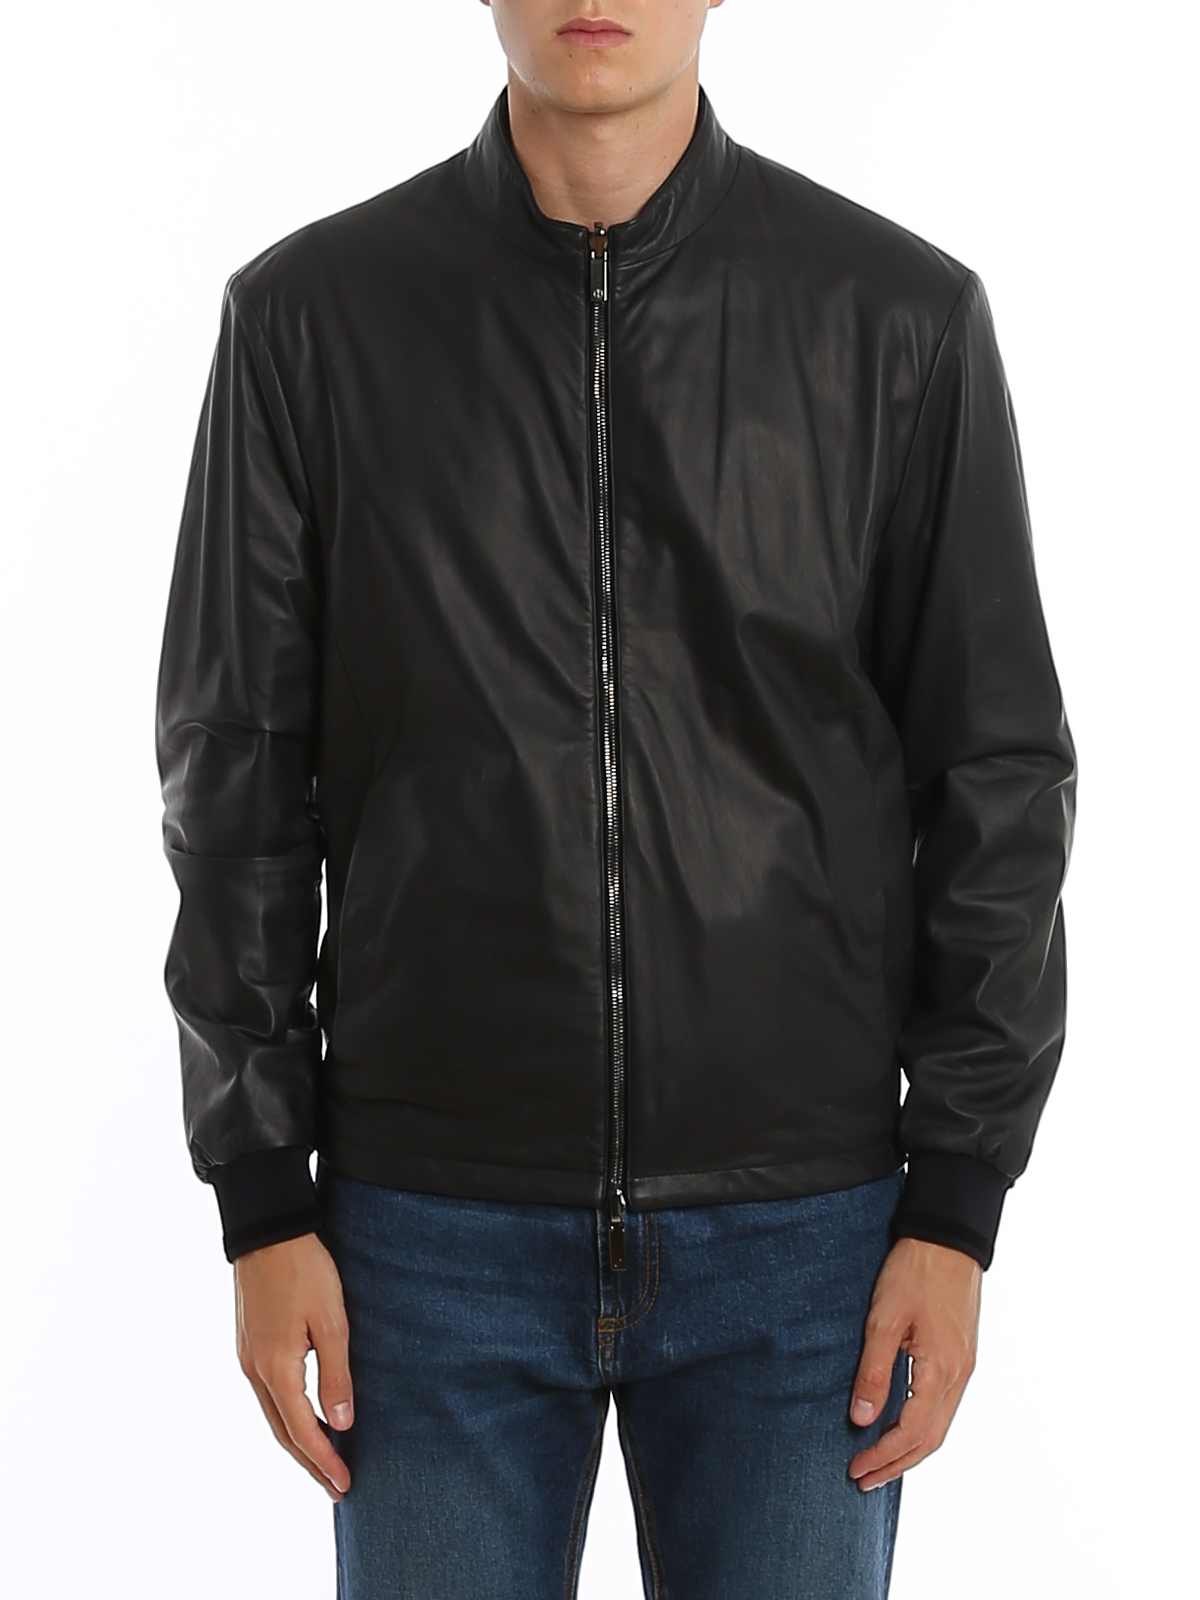 giorgio armani leather jacket